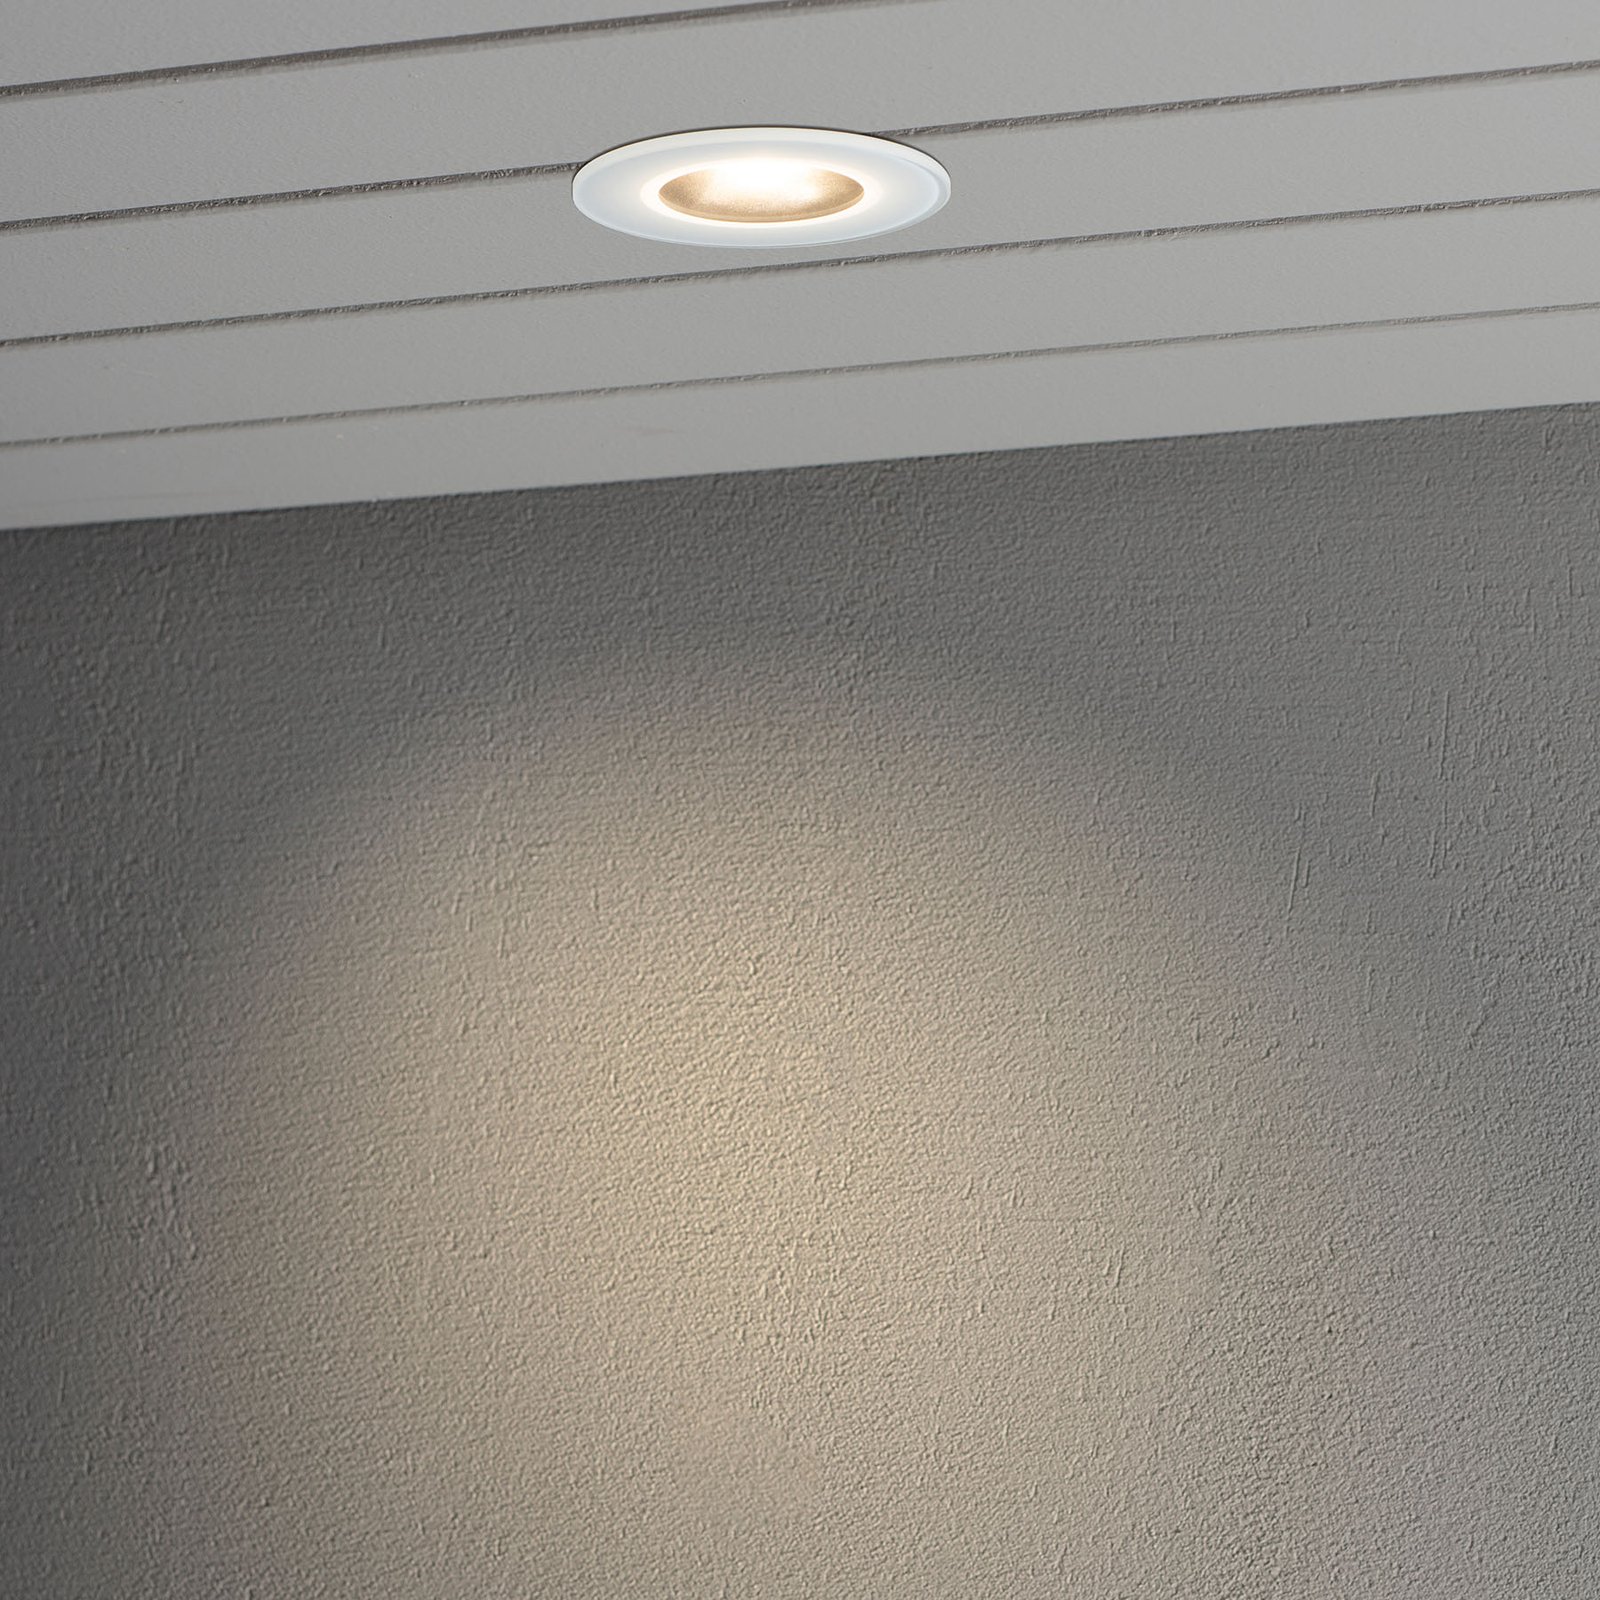 LED inbouwlamp 7875, plafond buiten, wit